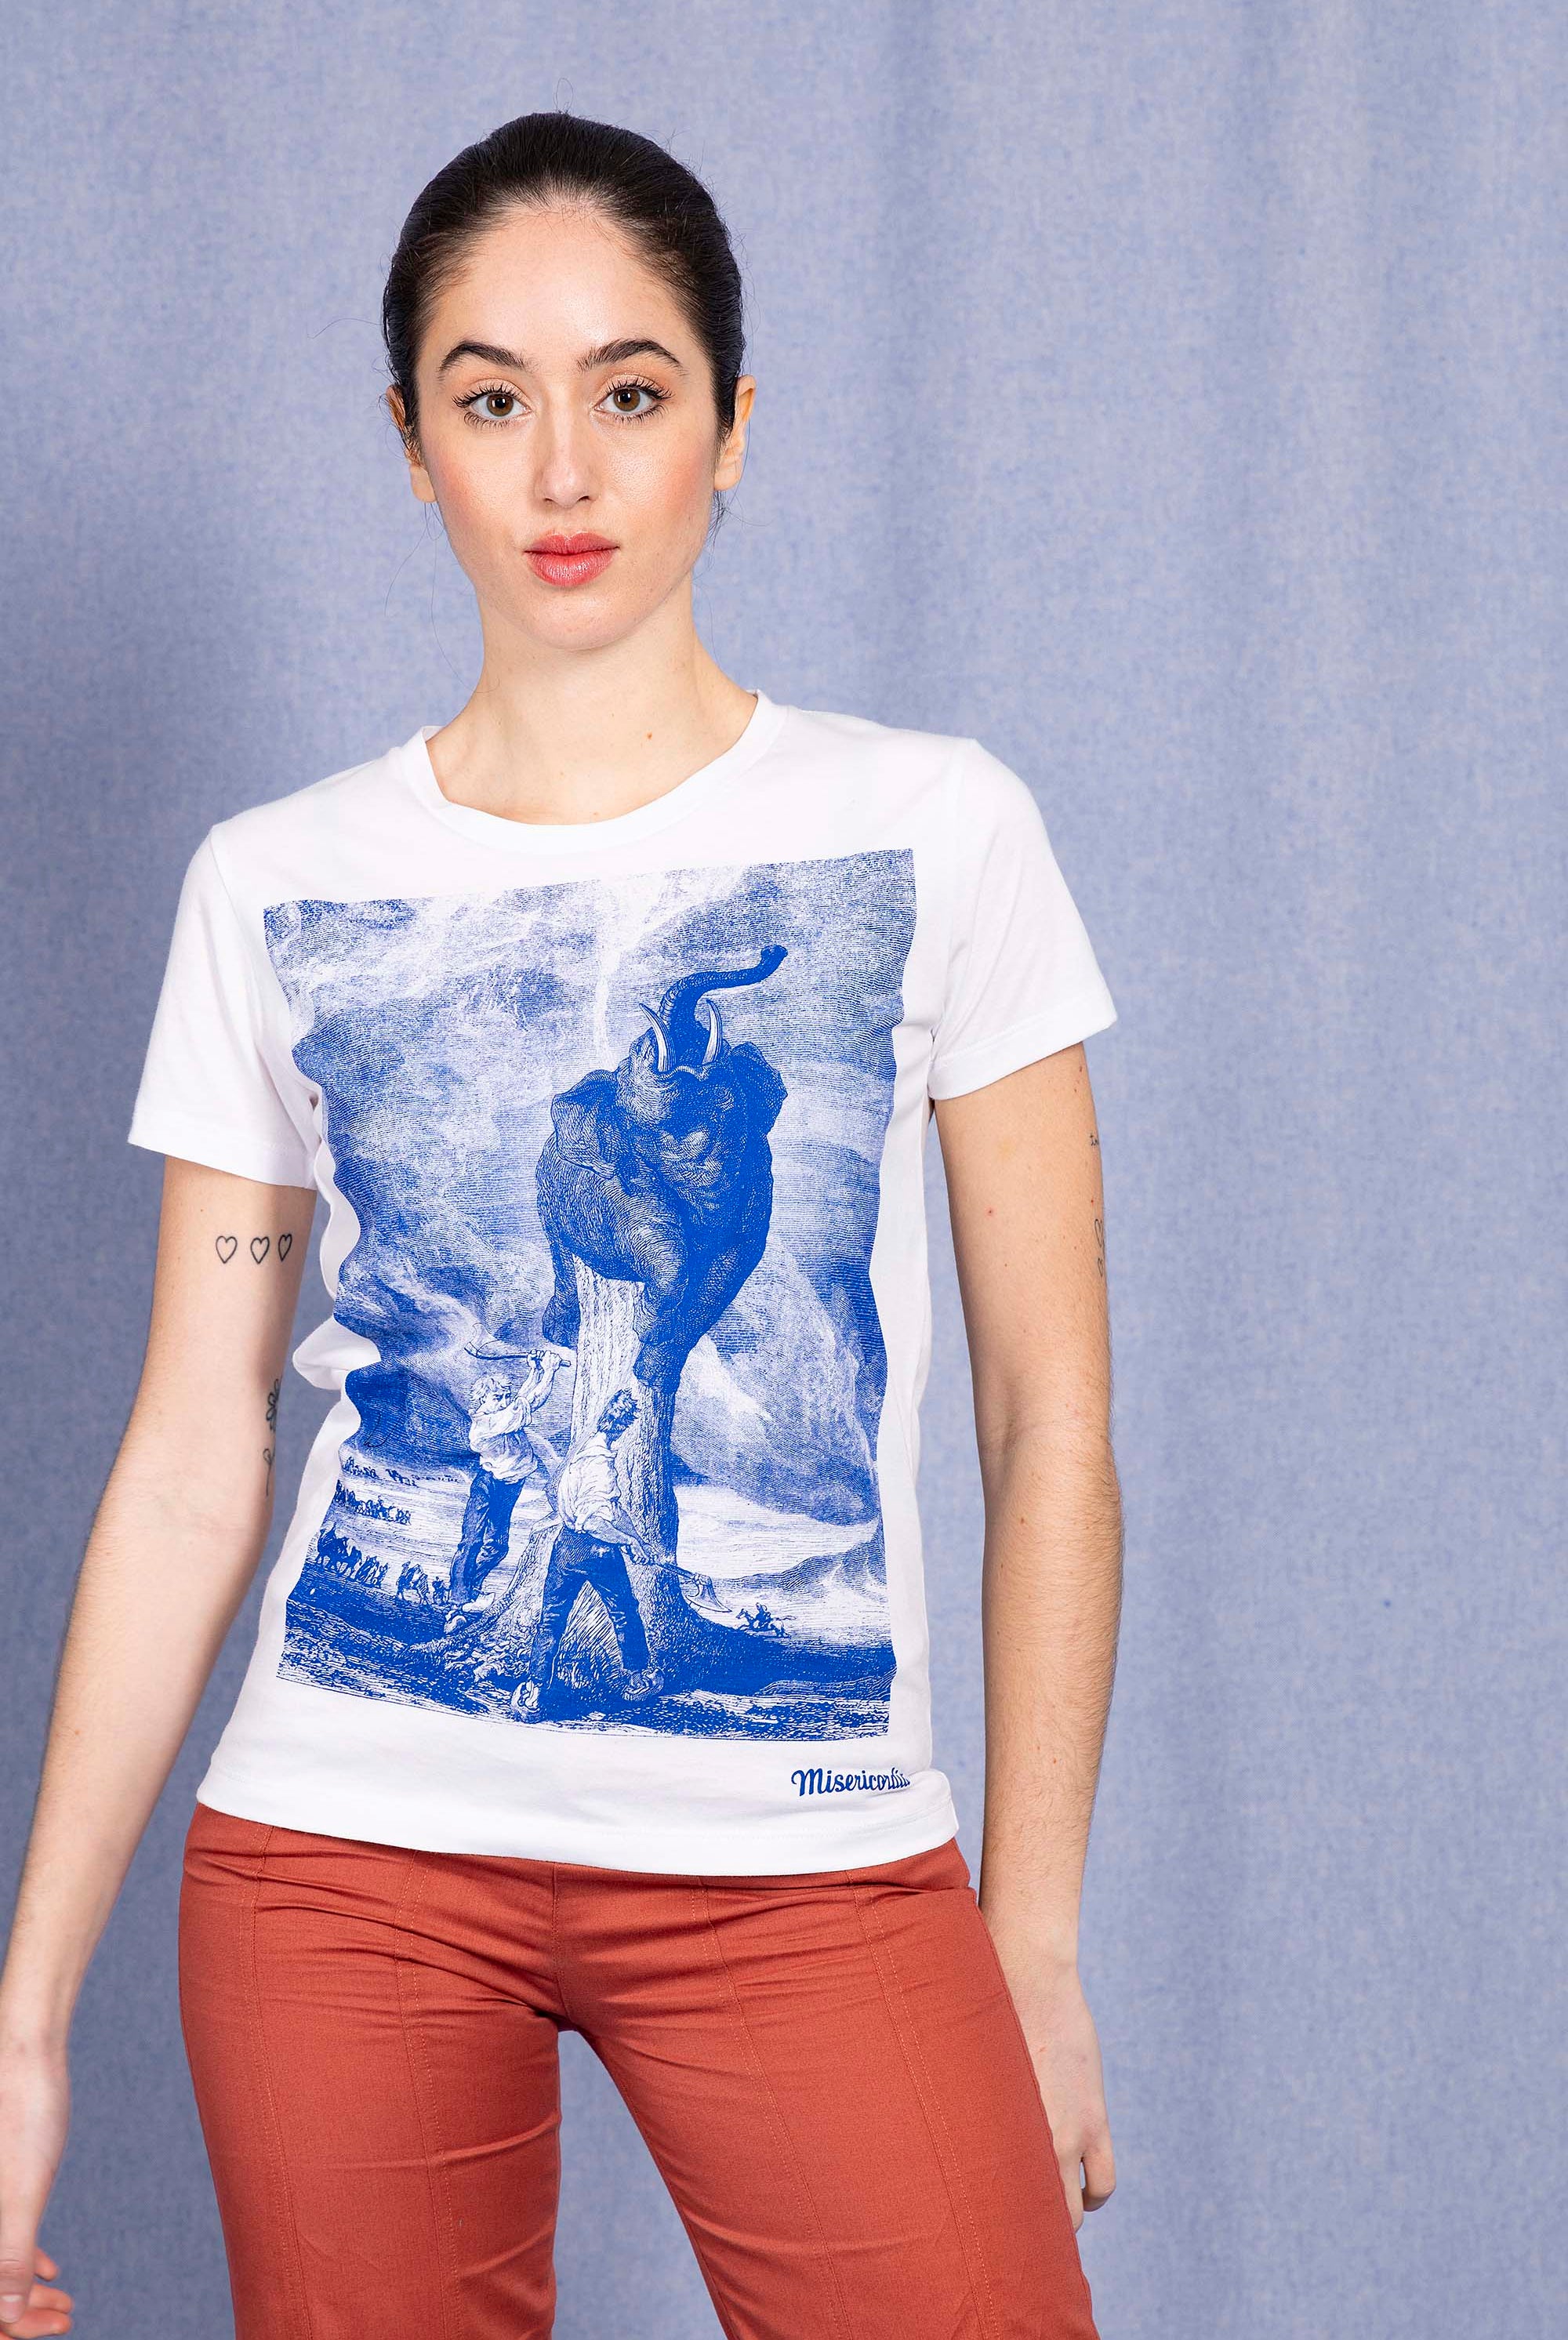 T-Shirt Medallon Elefante Blanc modèles de t-shirts femme pour le quotidien, les vacances ou les week-end